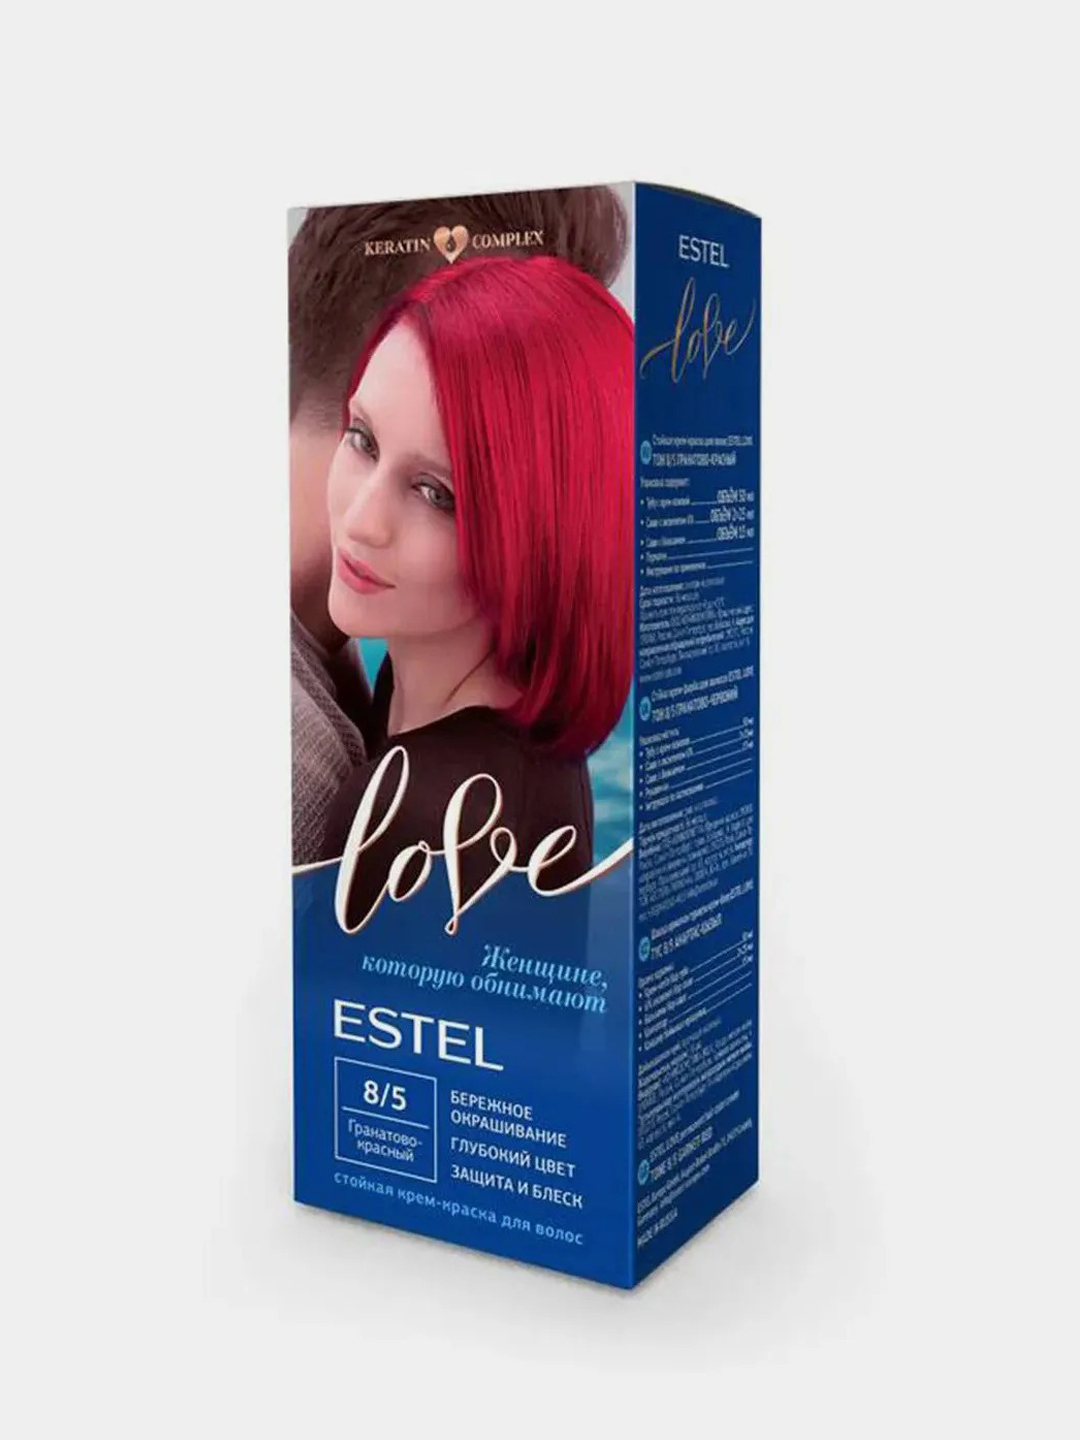 Волос лове. Estel Love крем-краска тон 8/16 Лакричная конфета. Estel гранатово красный 8/5. Эстель лав краска для волос №8.5 гранатово-красный (м) 1 шт. Эстель Love 8.5 палитра.